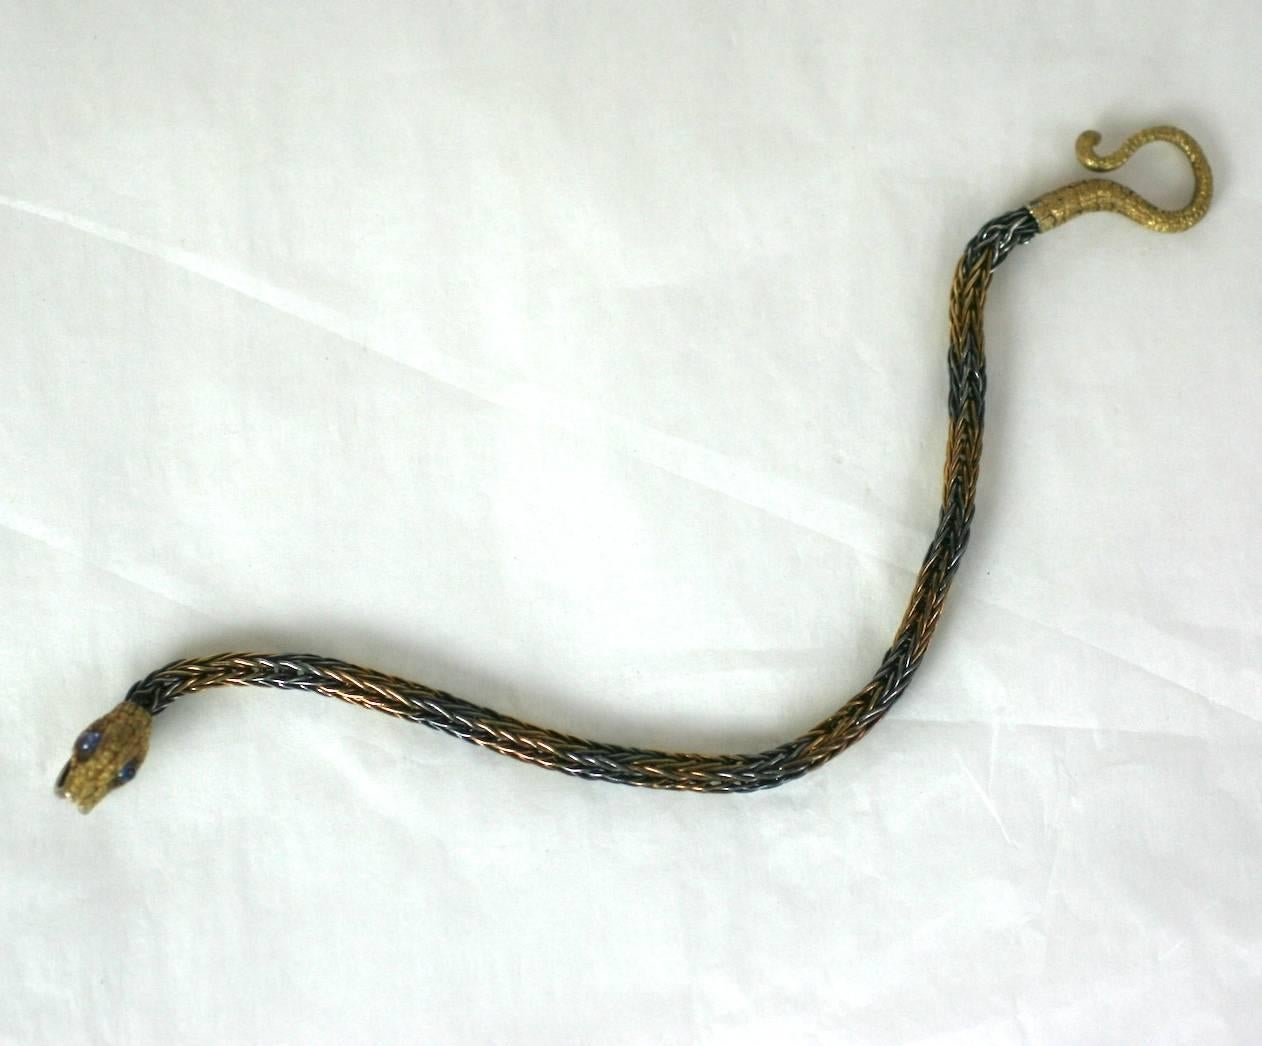 Amazing Antique Snake Bracelet du milieu du 19ème siècle. La tête et la queue du serpent sont composées d'or 18 carats ciselé et magnifiquement détaillé, avec de grands saphirs cabochons en guise d'yeux. Les grands crocs forment la fermeture